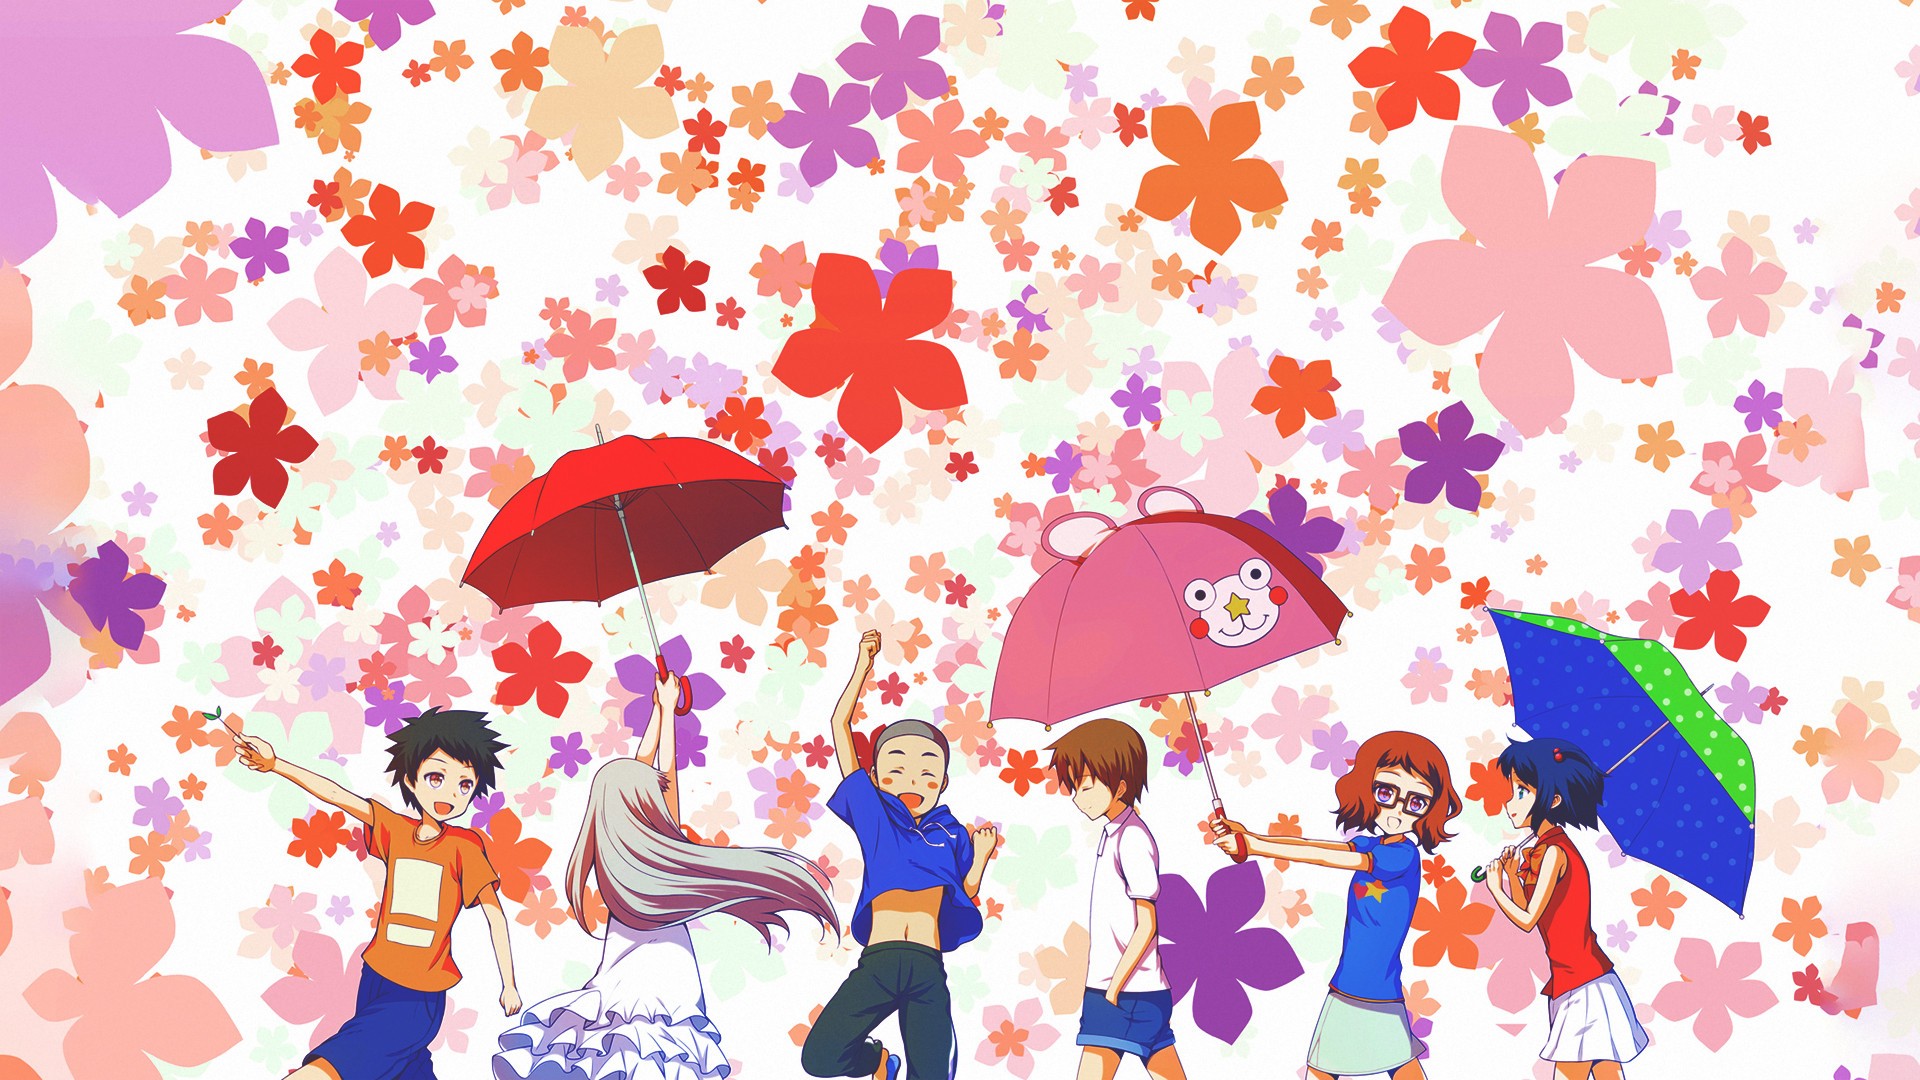 Anime 1920x1080 Ano Hi Mita Hana no Namae wo Bokutachi wa Mada Shiranai umbrella anime girls anime boys anime women with umbrella colorful